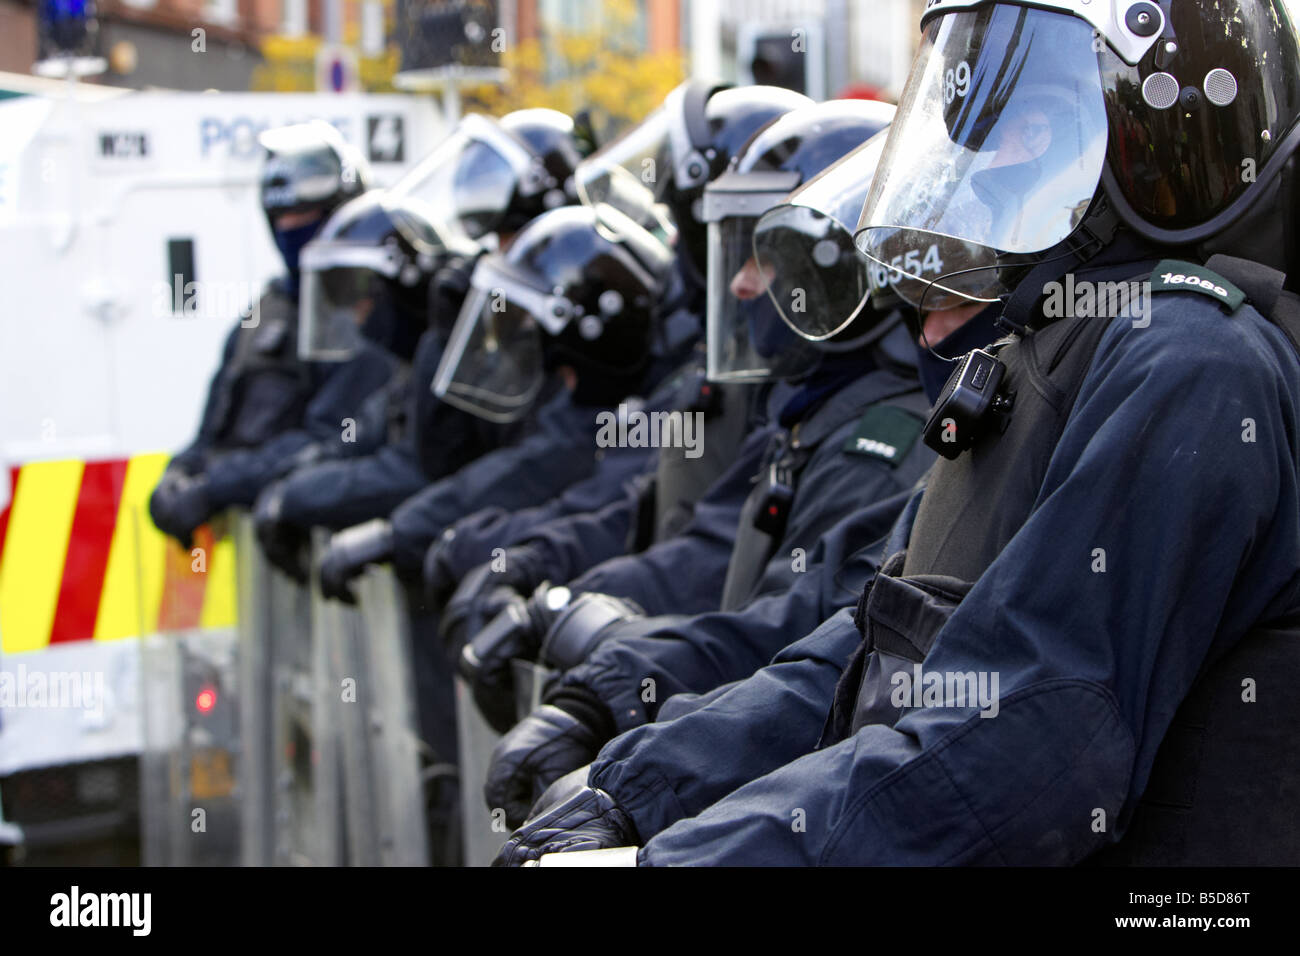 Ligne de service de police PSNI de l'Irlande du Nord Les agents anti-émeute à l'aise avec boucliers antiémeutes lors de perturbation belfast city centre Banque D'Images